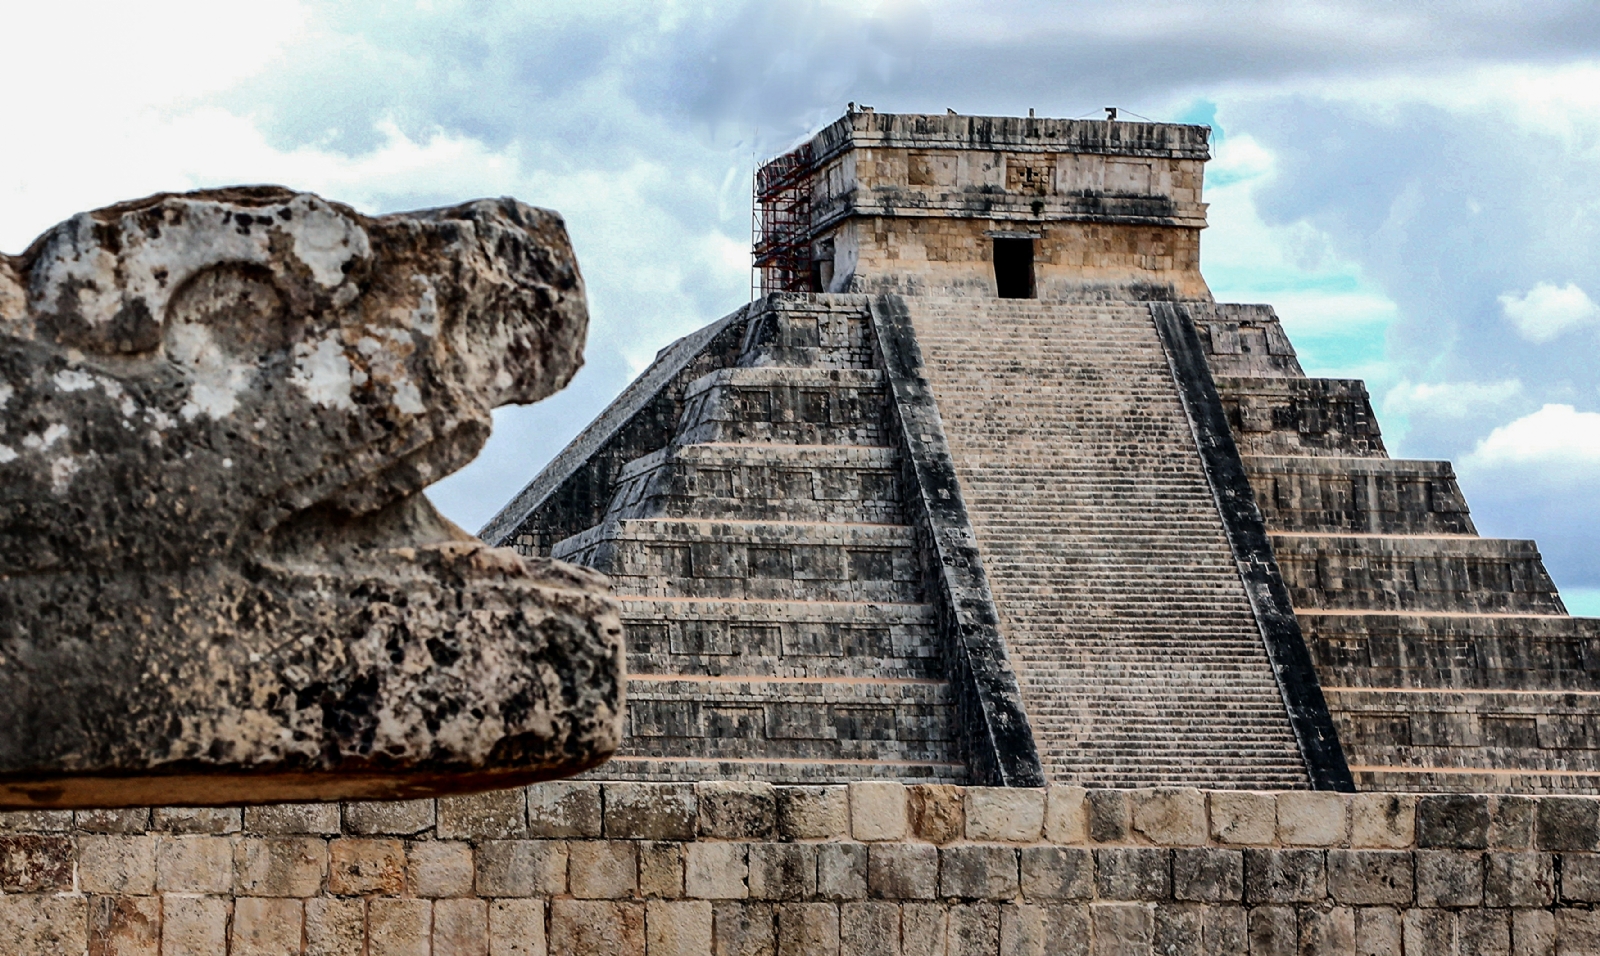 Conoce las mejores zonas arqueológicas de Yucatán, según ChatGPT